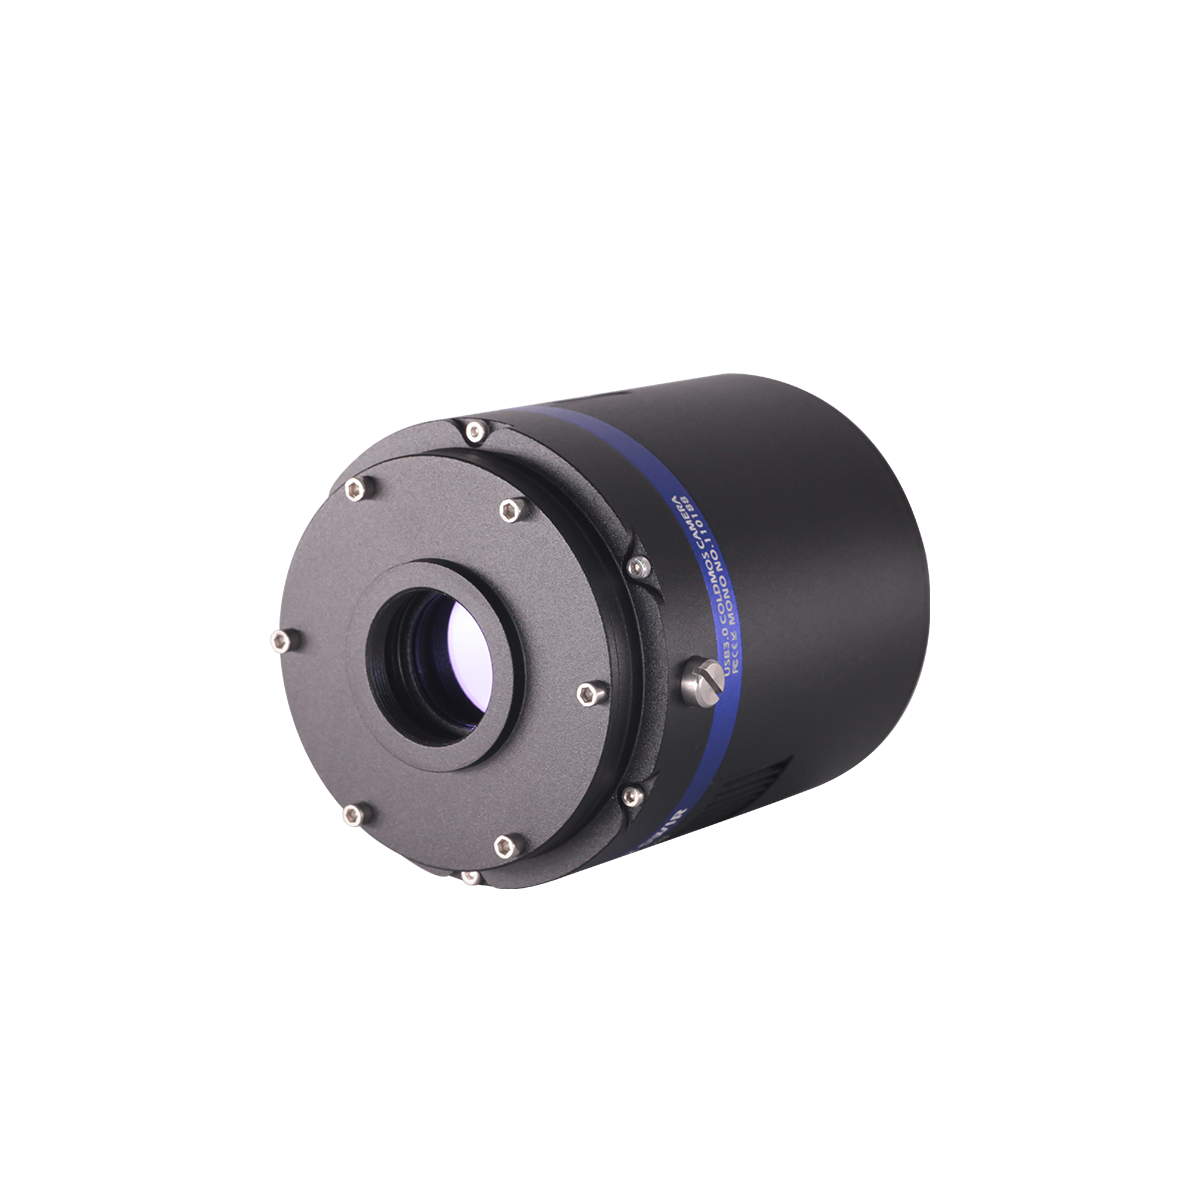 QHY992短波红外相机为QHY990和QHY991 的后续升级型号，具有更大的传感器尺寸和更好的像素密度。搭载 Sony IMX992传感器。该芯片具有宽波段（0.4um-1.7um）和超高灵敏度。同属科研级制冷CMOS相机 ，可应用于白天看星，工业检测，铟镓砷检测等。